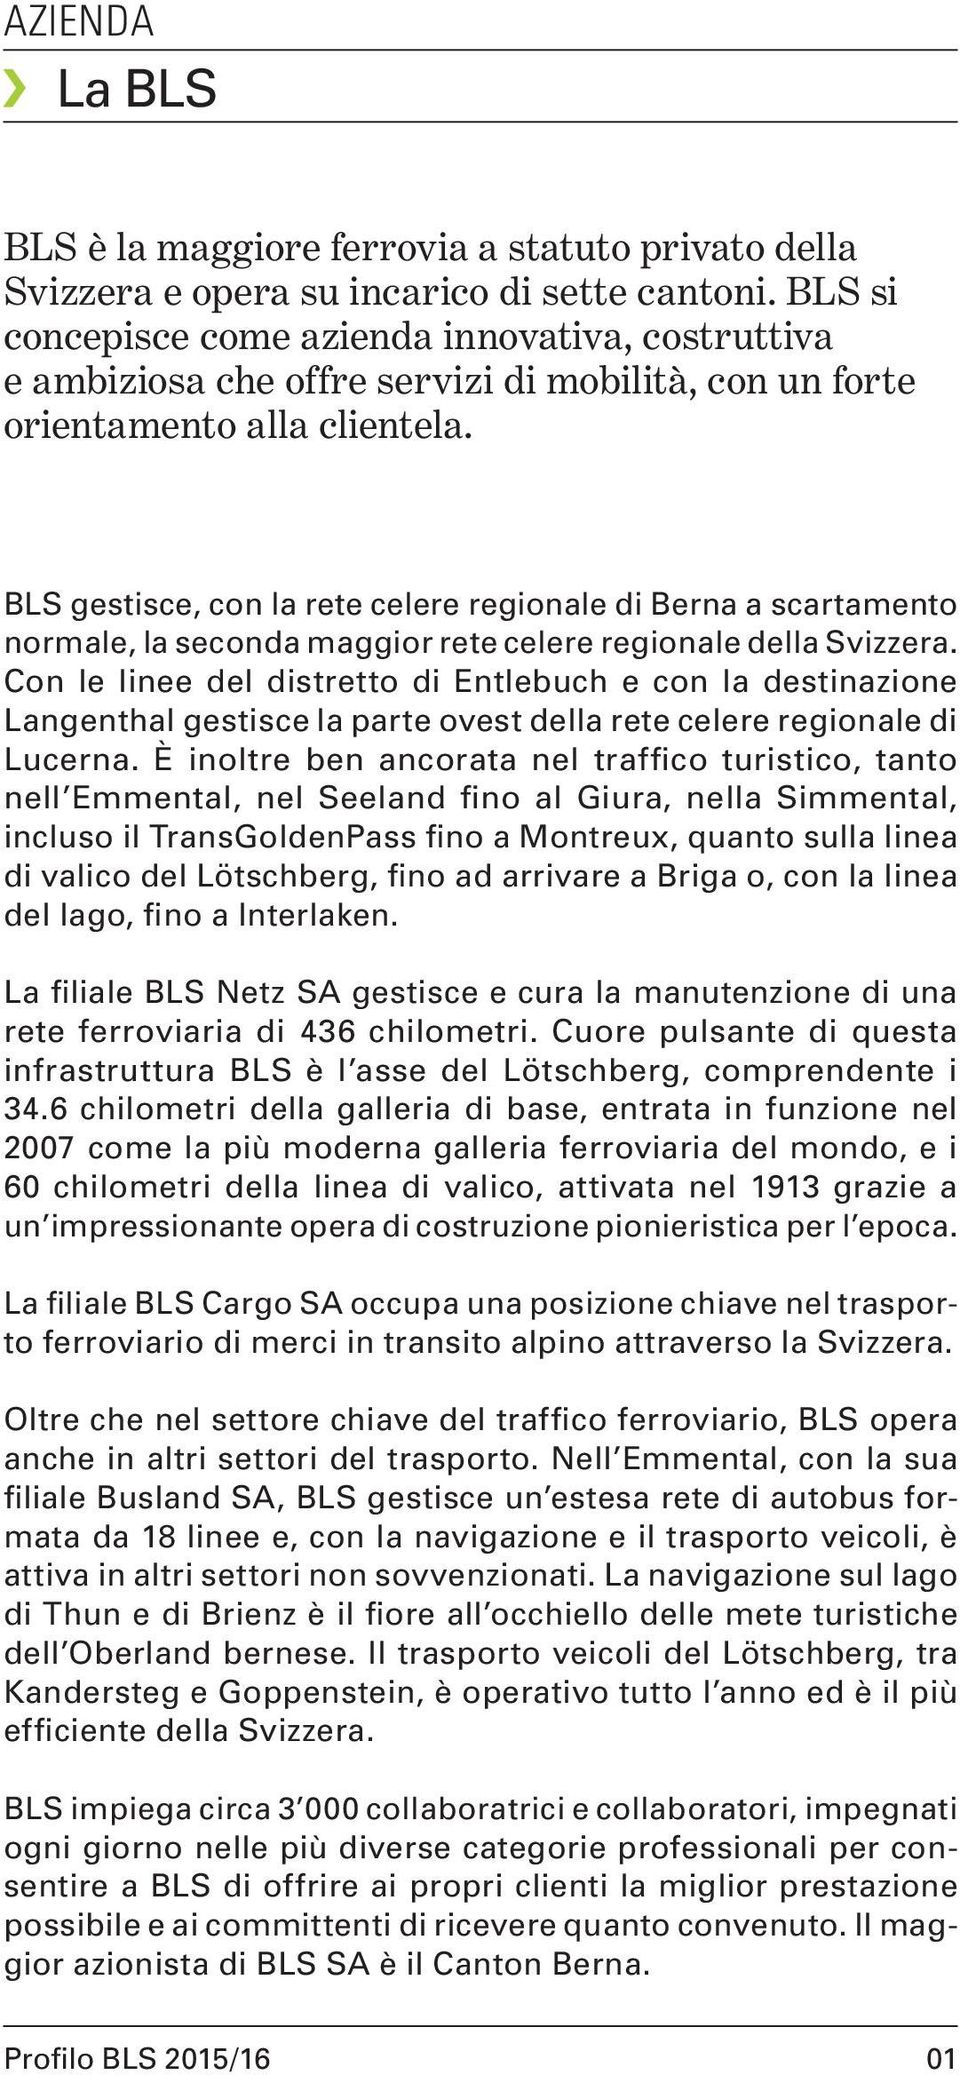 BLS gestisce, con la rete celere regionale di Berna a scartamento normale, la seconda maggior rete celere regionale della Svizzera.